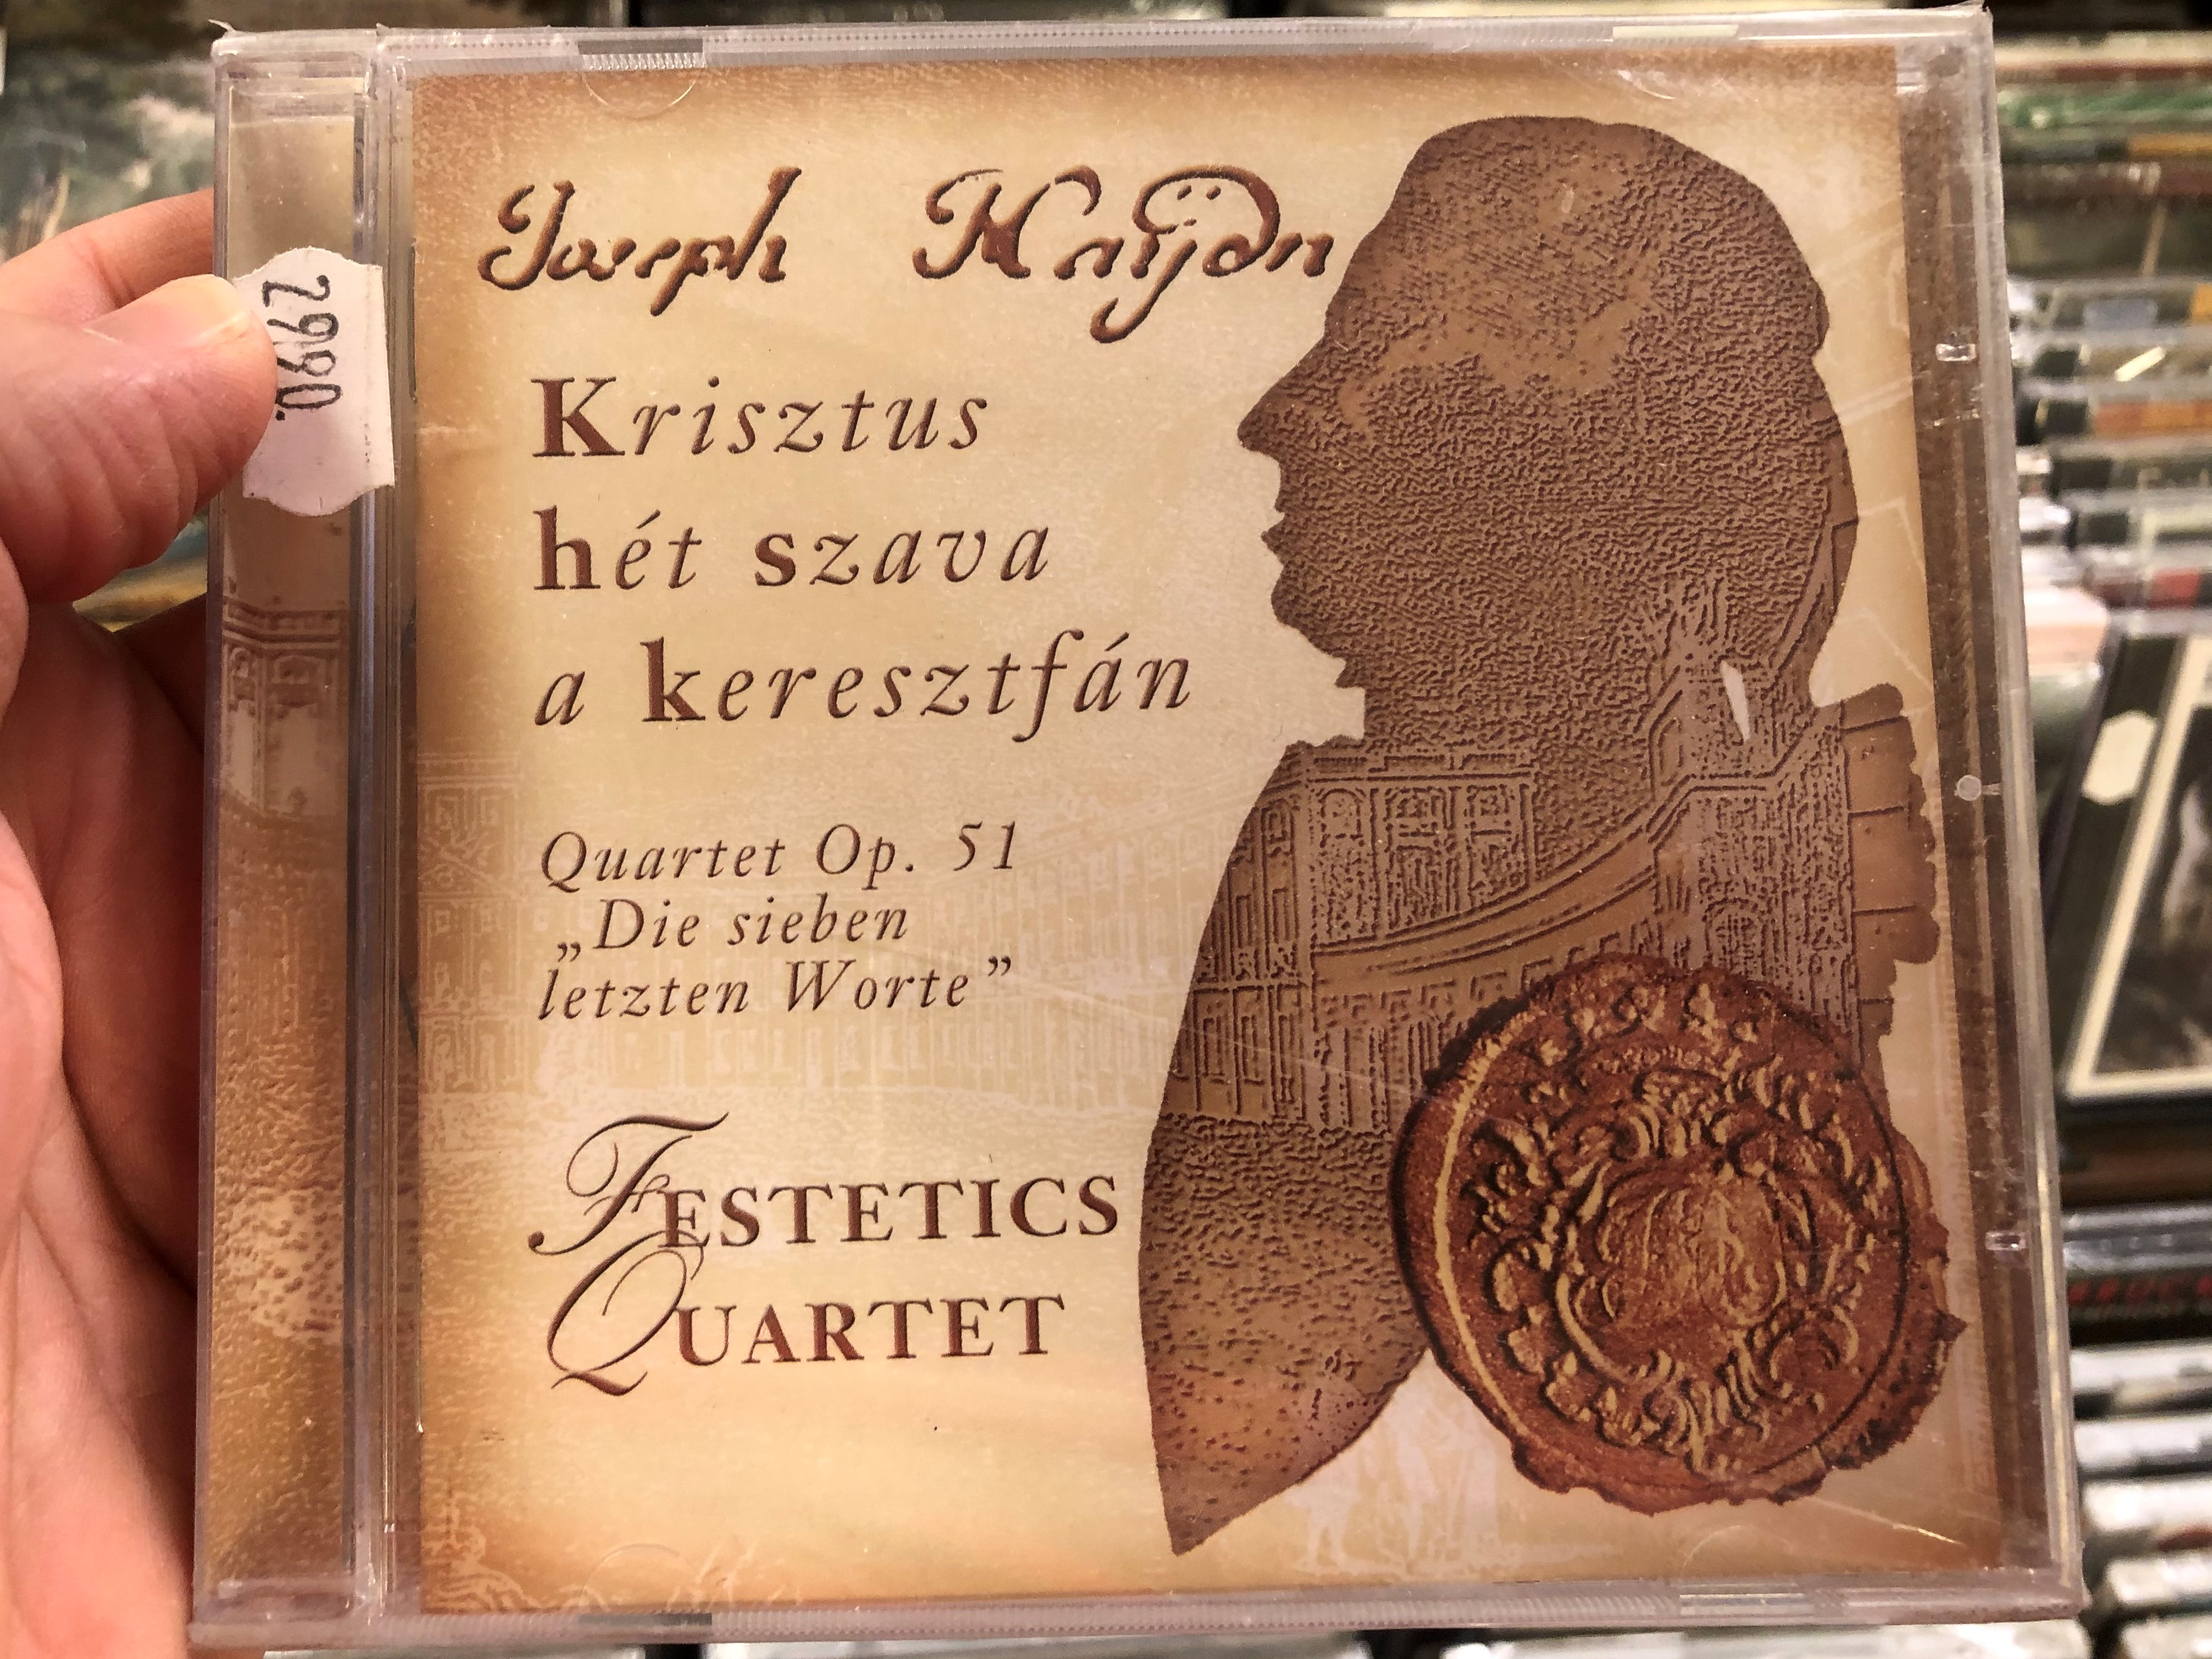 joseph-haydn-festetics-quartet-krisztus-het-szava-a-keresztfan-quartet-op.-51-die-sieben-letzen-worte-tom-tom-records-audio-cd-2011-ttcd-165-1-.jpg